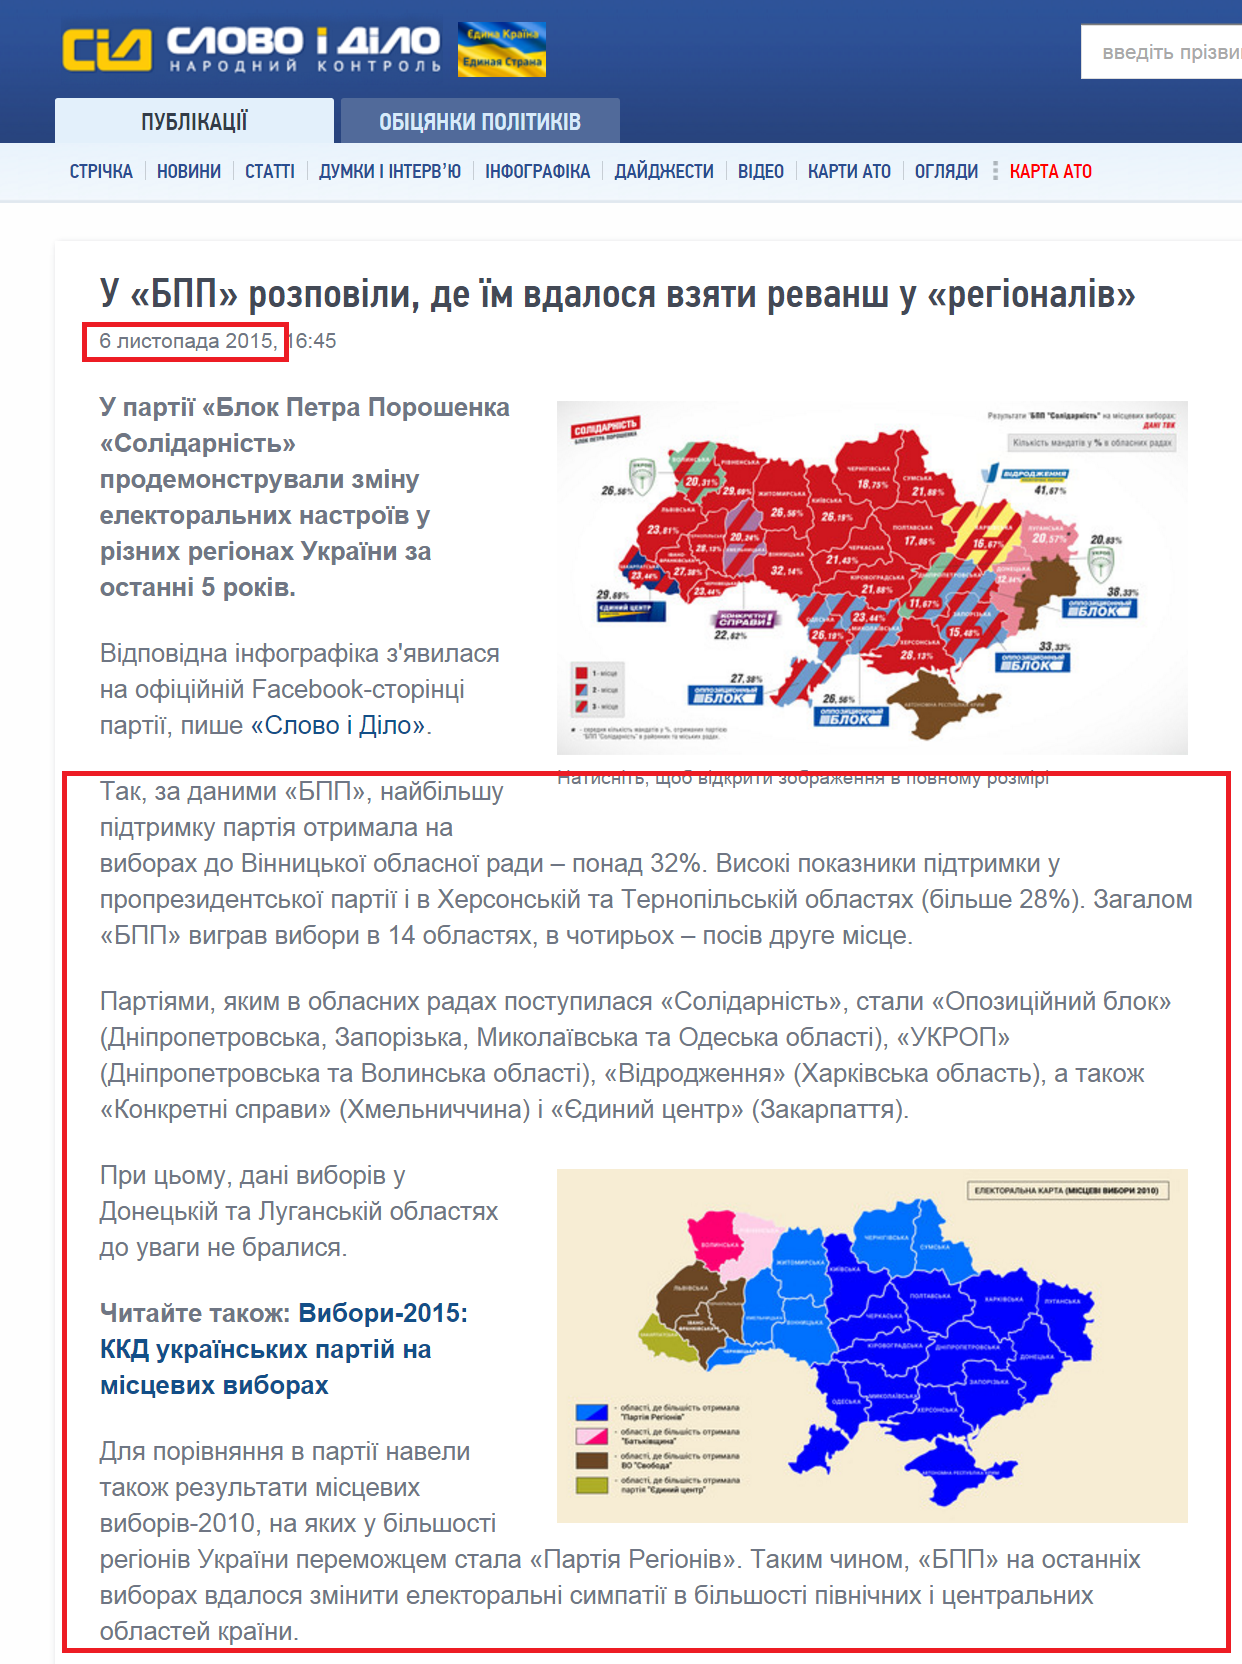 http://www.slovoidilo.ua/2015/11/06/novyna/polityka/u-bpp-rozpovily-de-yim-vdalosya-vzyaty-revansh-u-rehionaliv